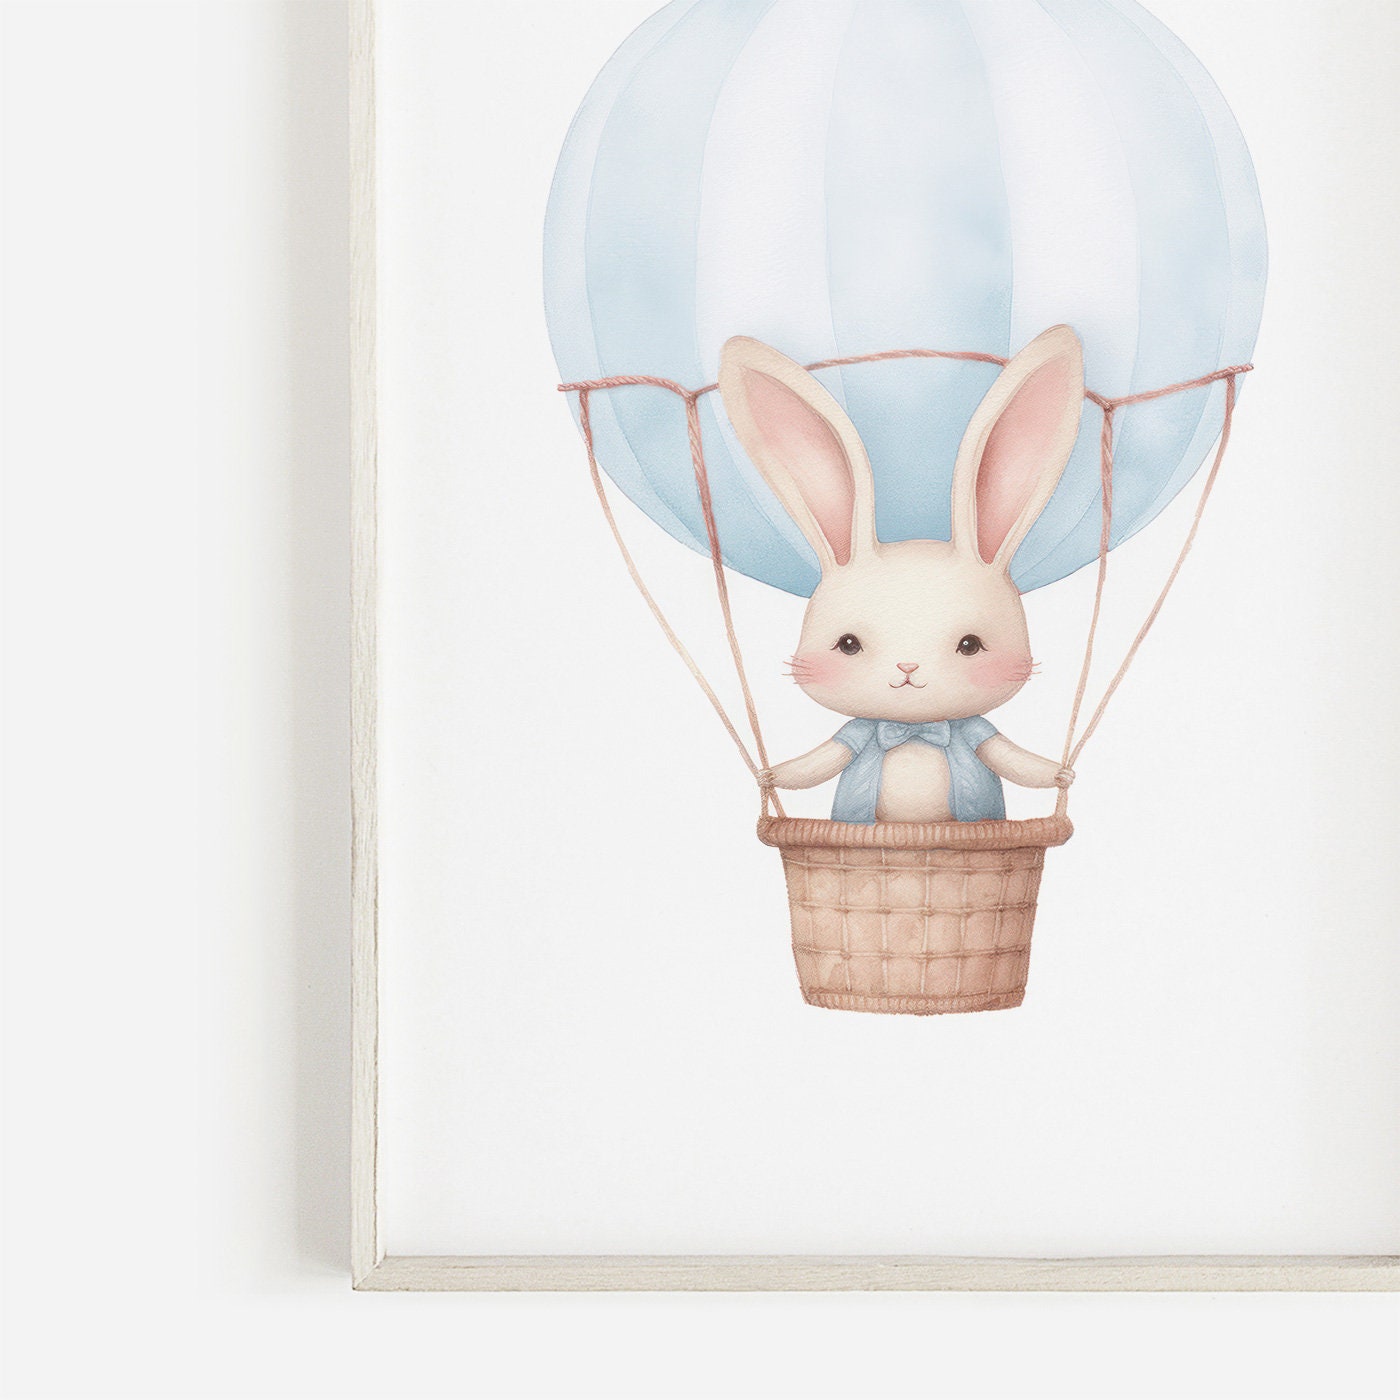 Hot Air Balloon Nursery Print, Cute Bunny Print, Nursery Decor, Hot Air Balloon Baby Shower Gift, Rabbit Nursery, PRINTABLE Nursery Wall Art